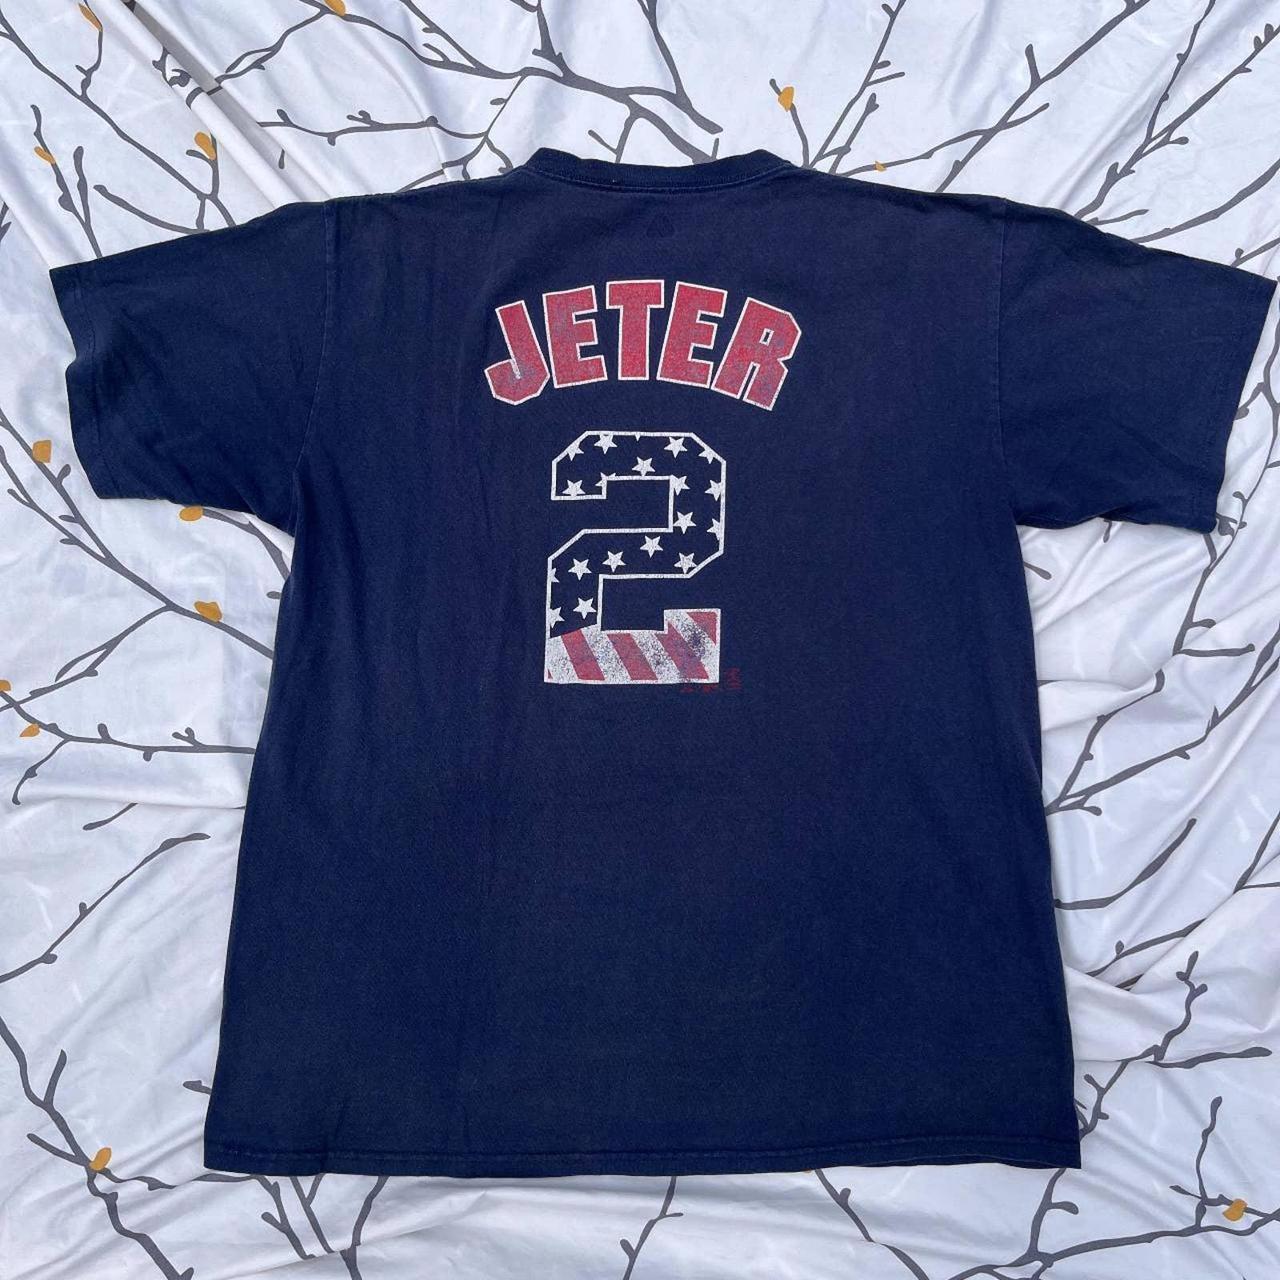 Vintage 90's Derek Jeter jersey Majestic made in USA - Depop